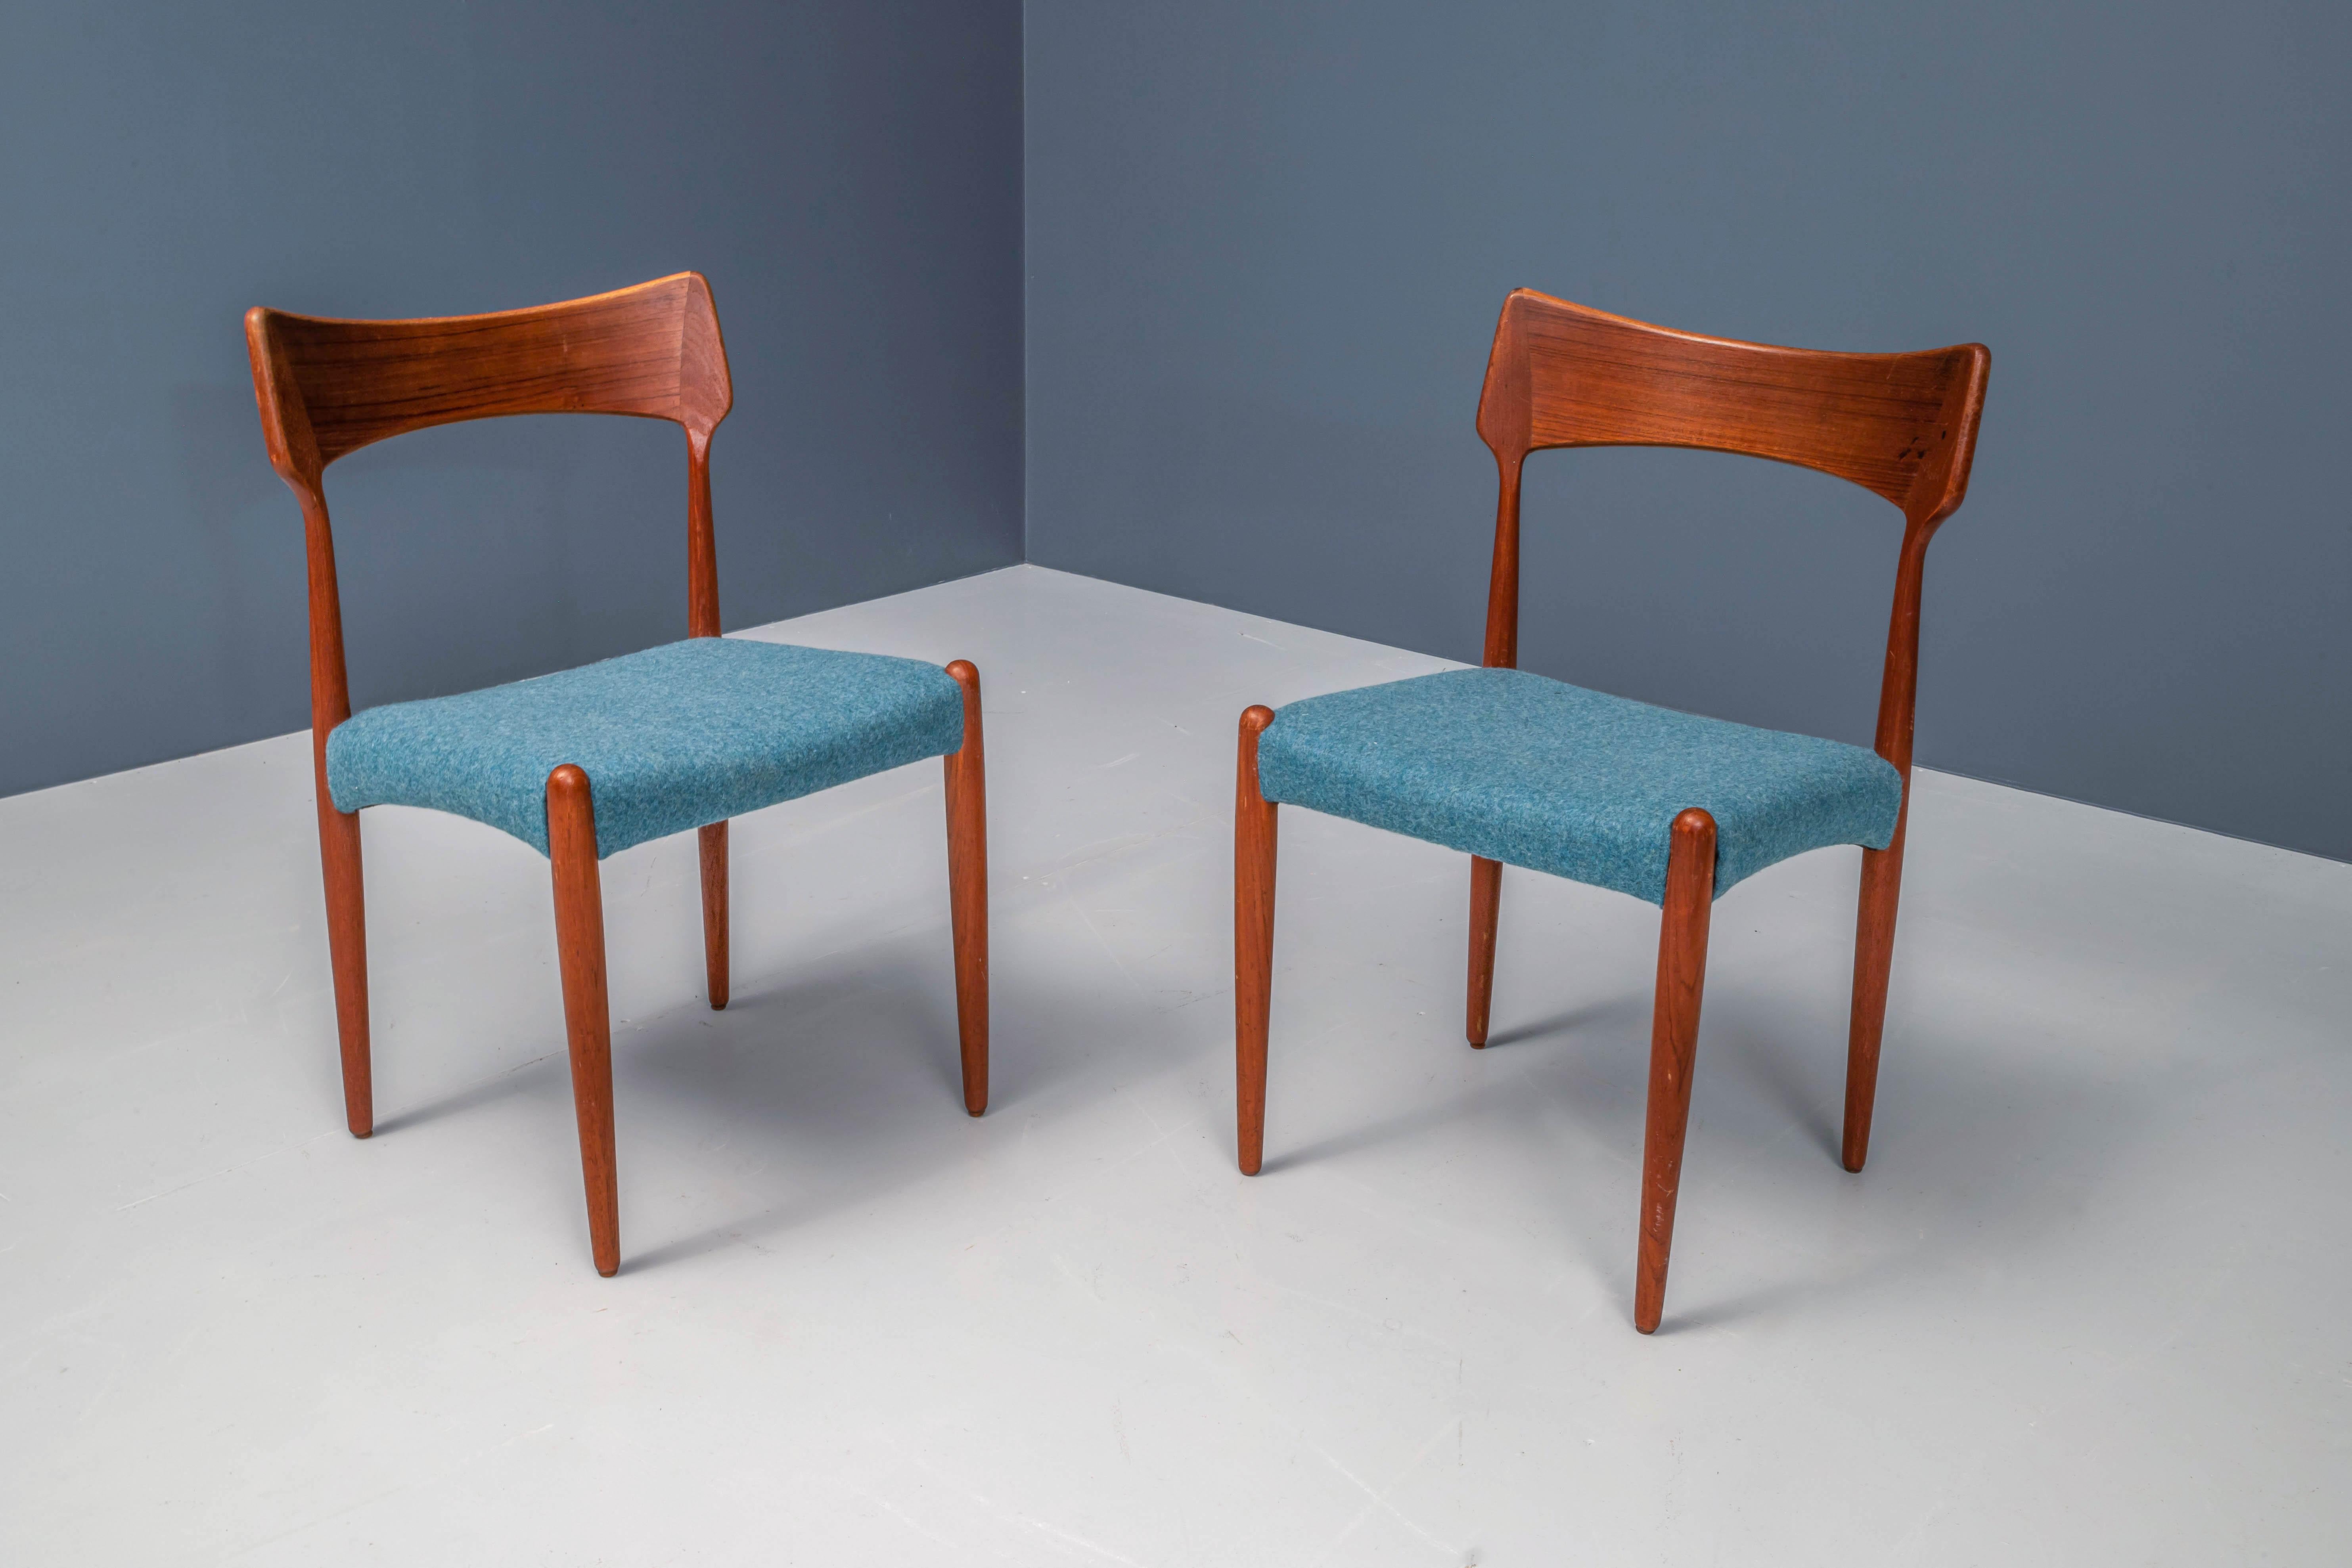 Vous recherchez des éléments danois frais et vifs dans votre maison ? Un ensemble de 4 chaises en teck nouvellement tapissées de laine bleu pétrole qui forme un bon contraste avec le bois brun très chaud. De grandes formes dans le dossier qui